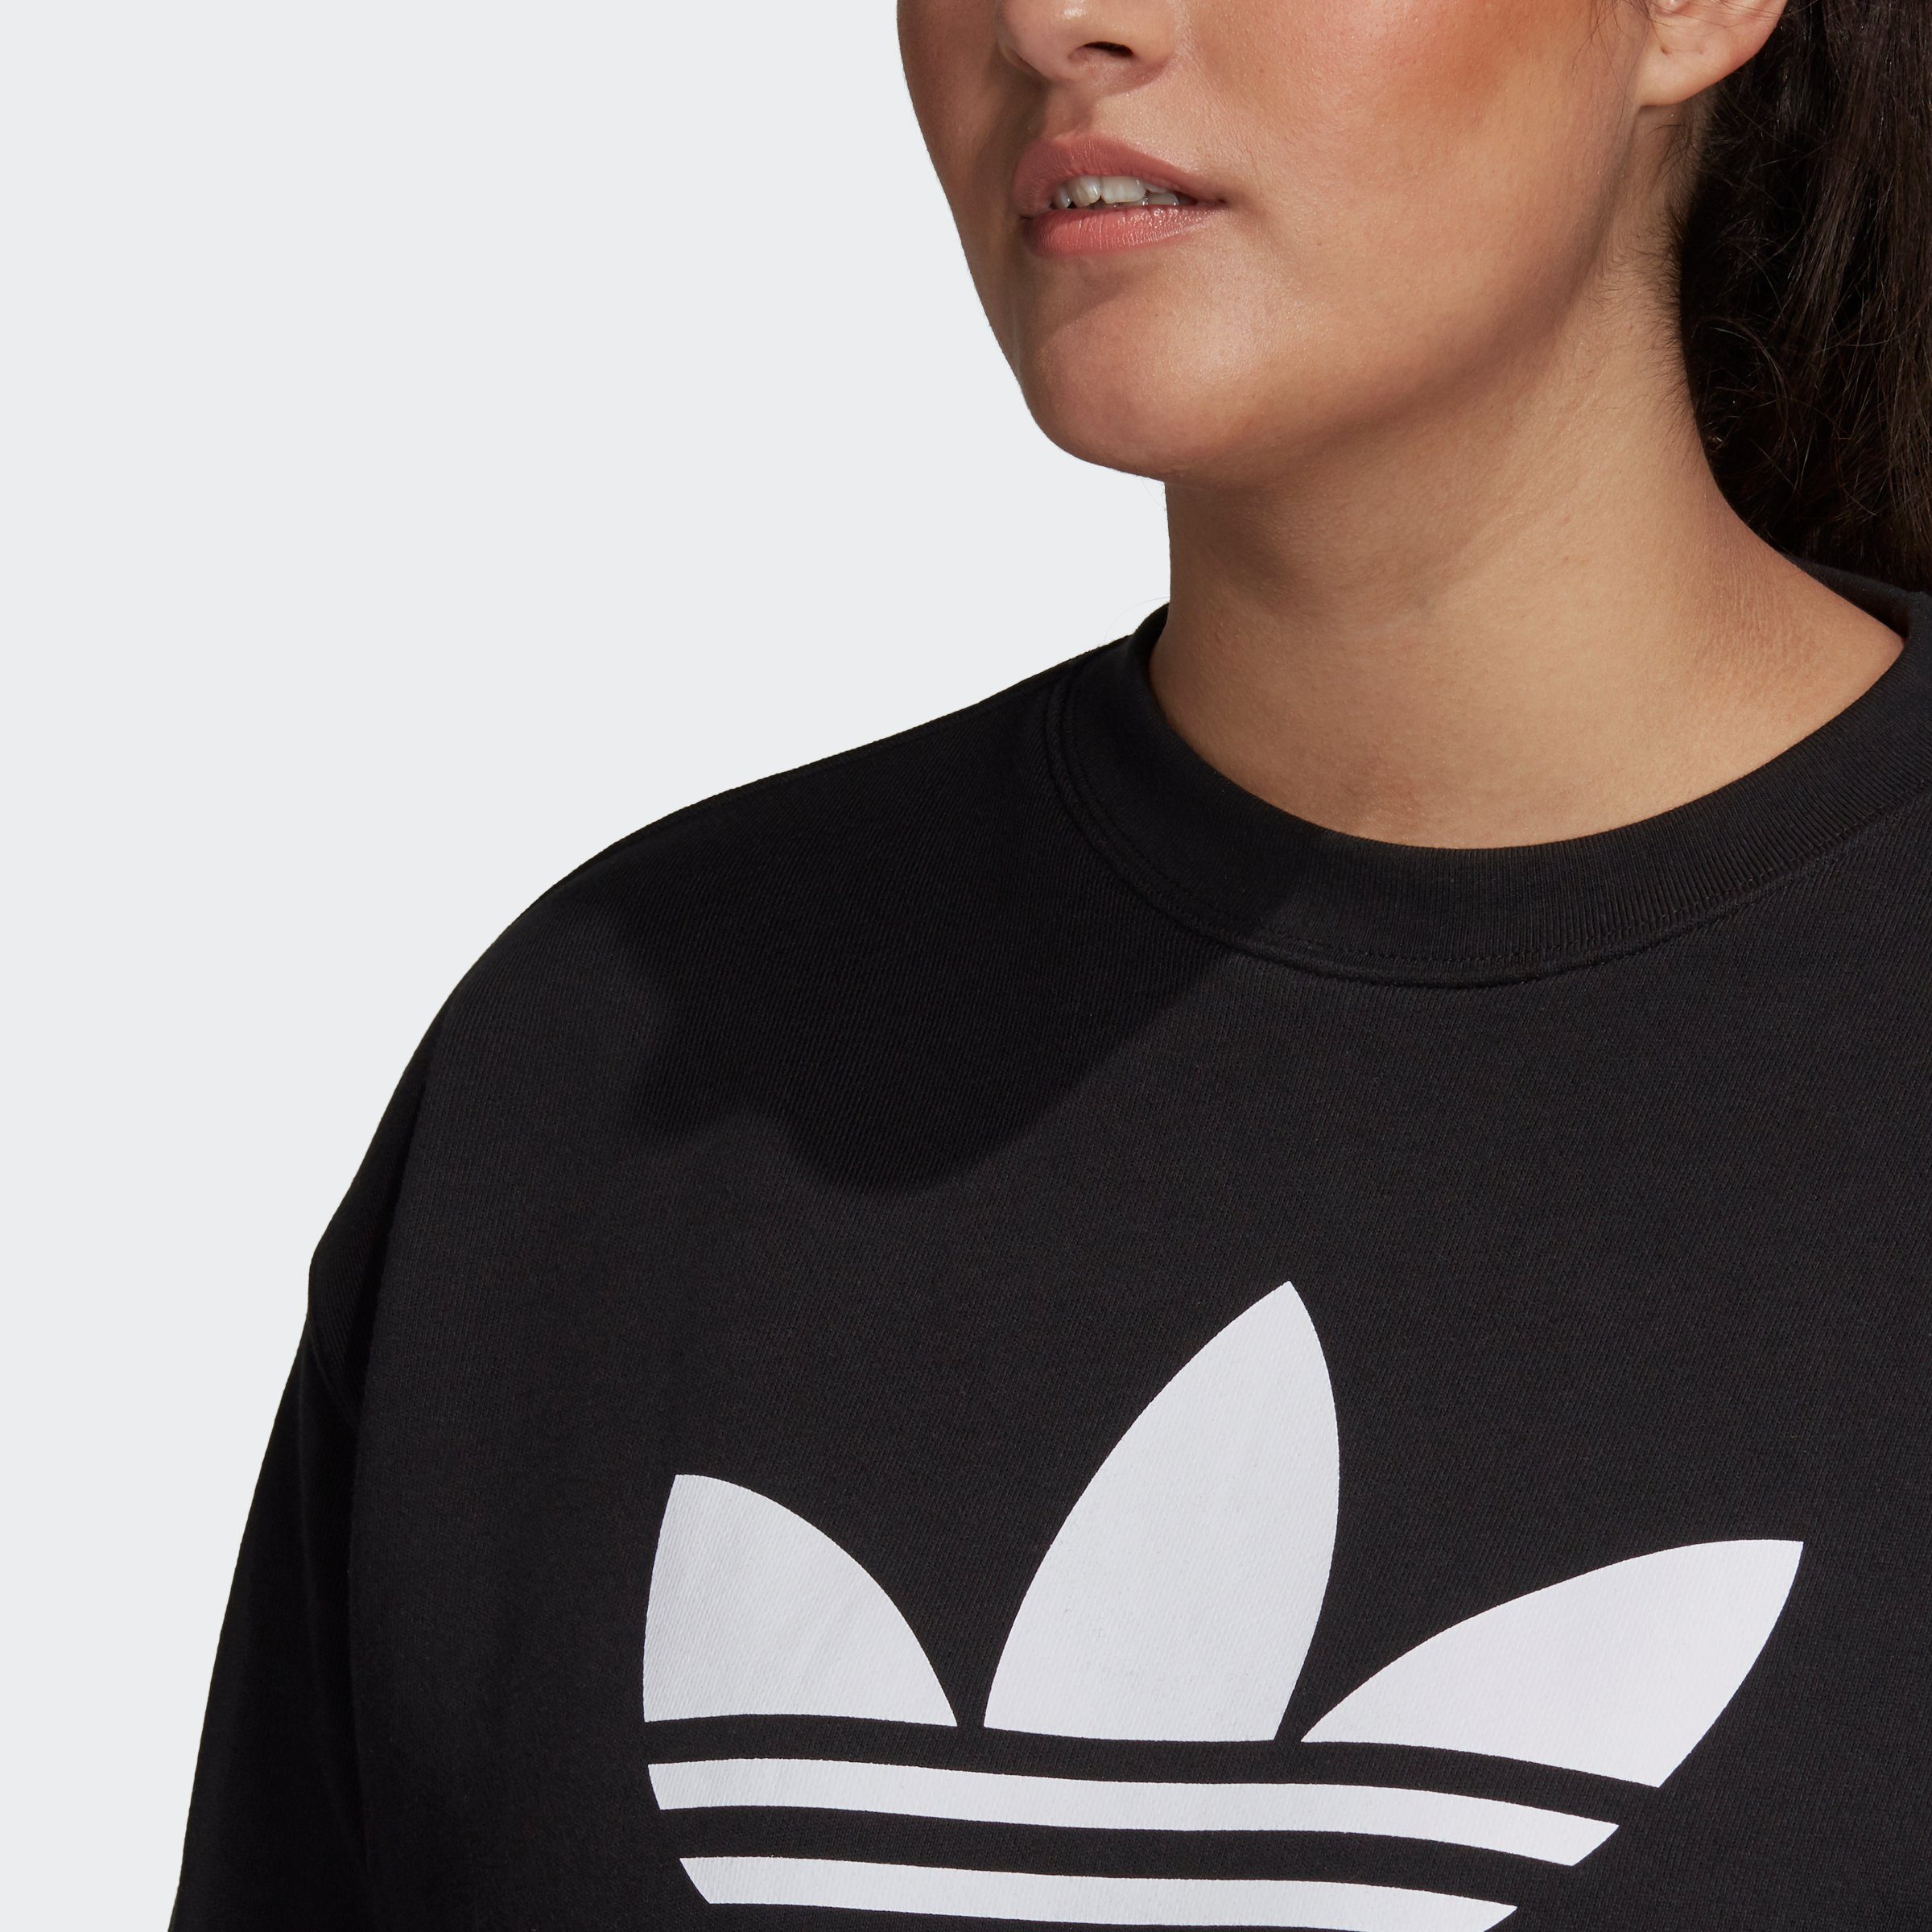 adidas Sweatshirt – BLACK/WHITE GRÖSSEN GROSSE TREFOIL Originals